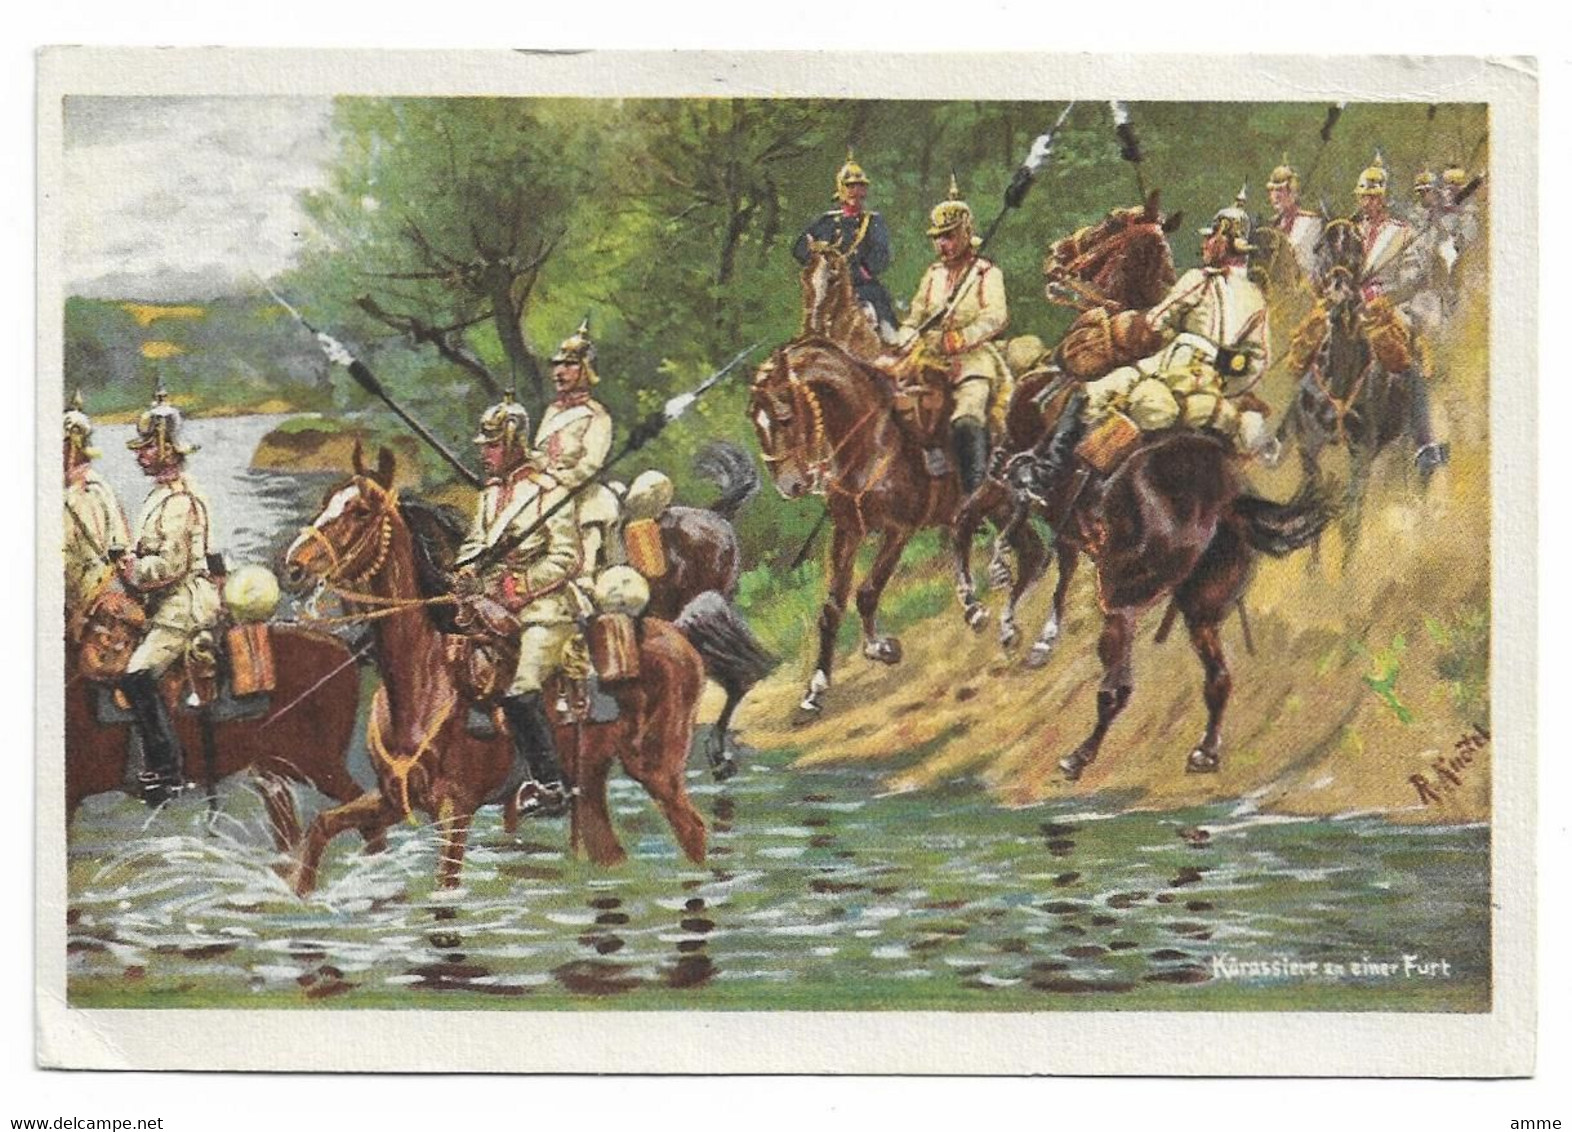 Vintage Postcard  *  R. Knoetel -  Kürassiere An Einer Furt (CPM)  (Militair - Oorlog - Guerre) - Knötel, R.